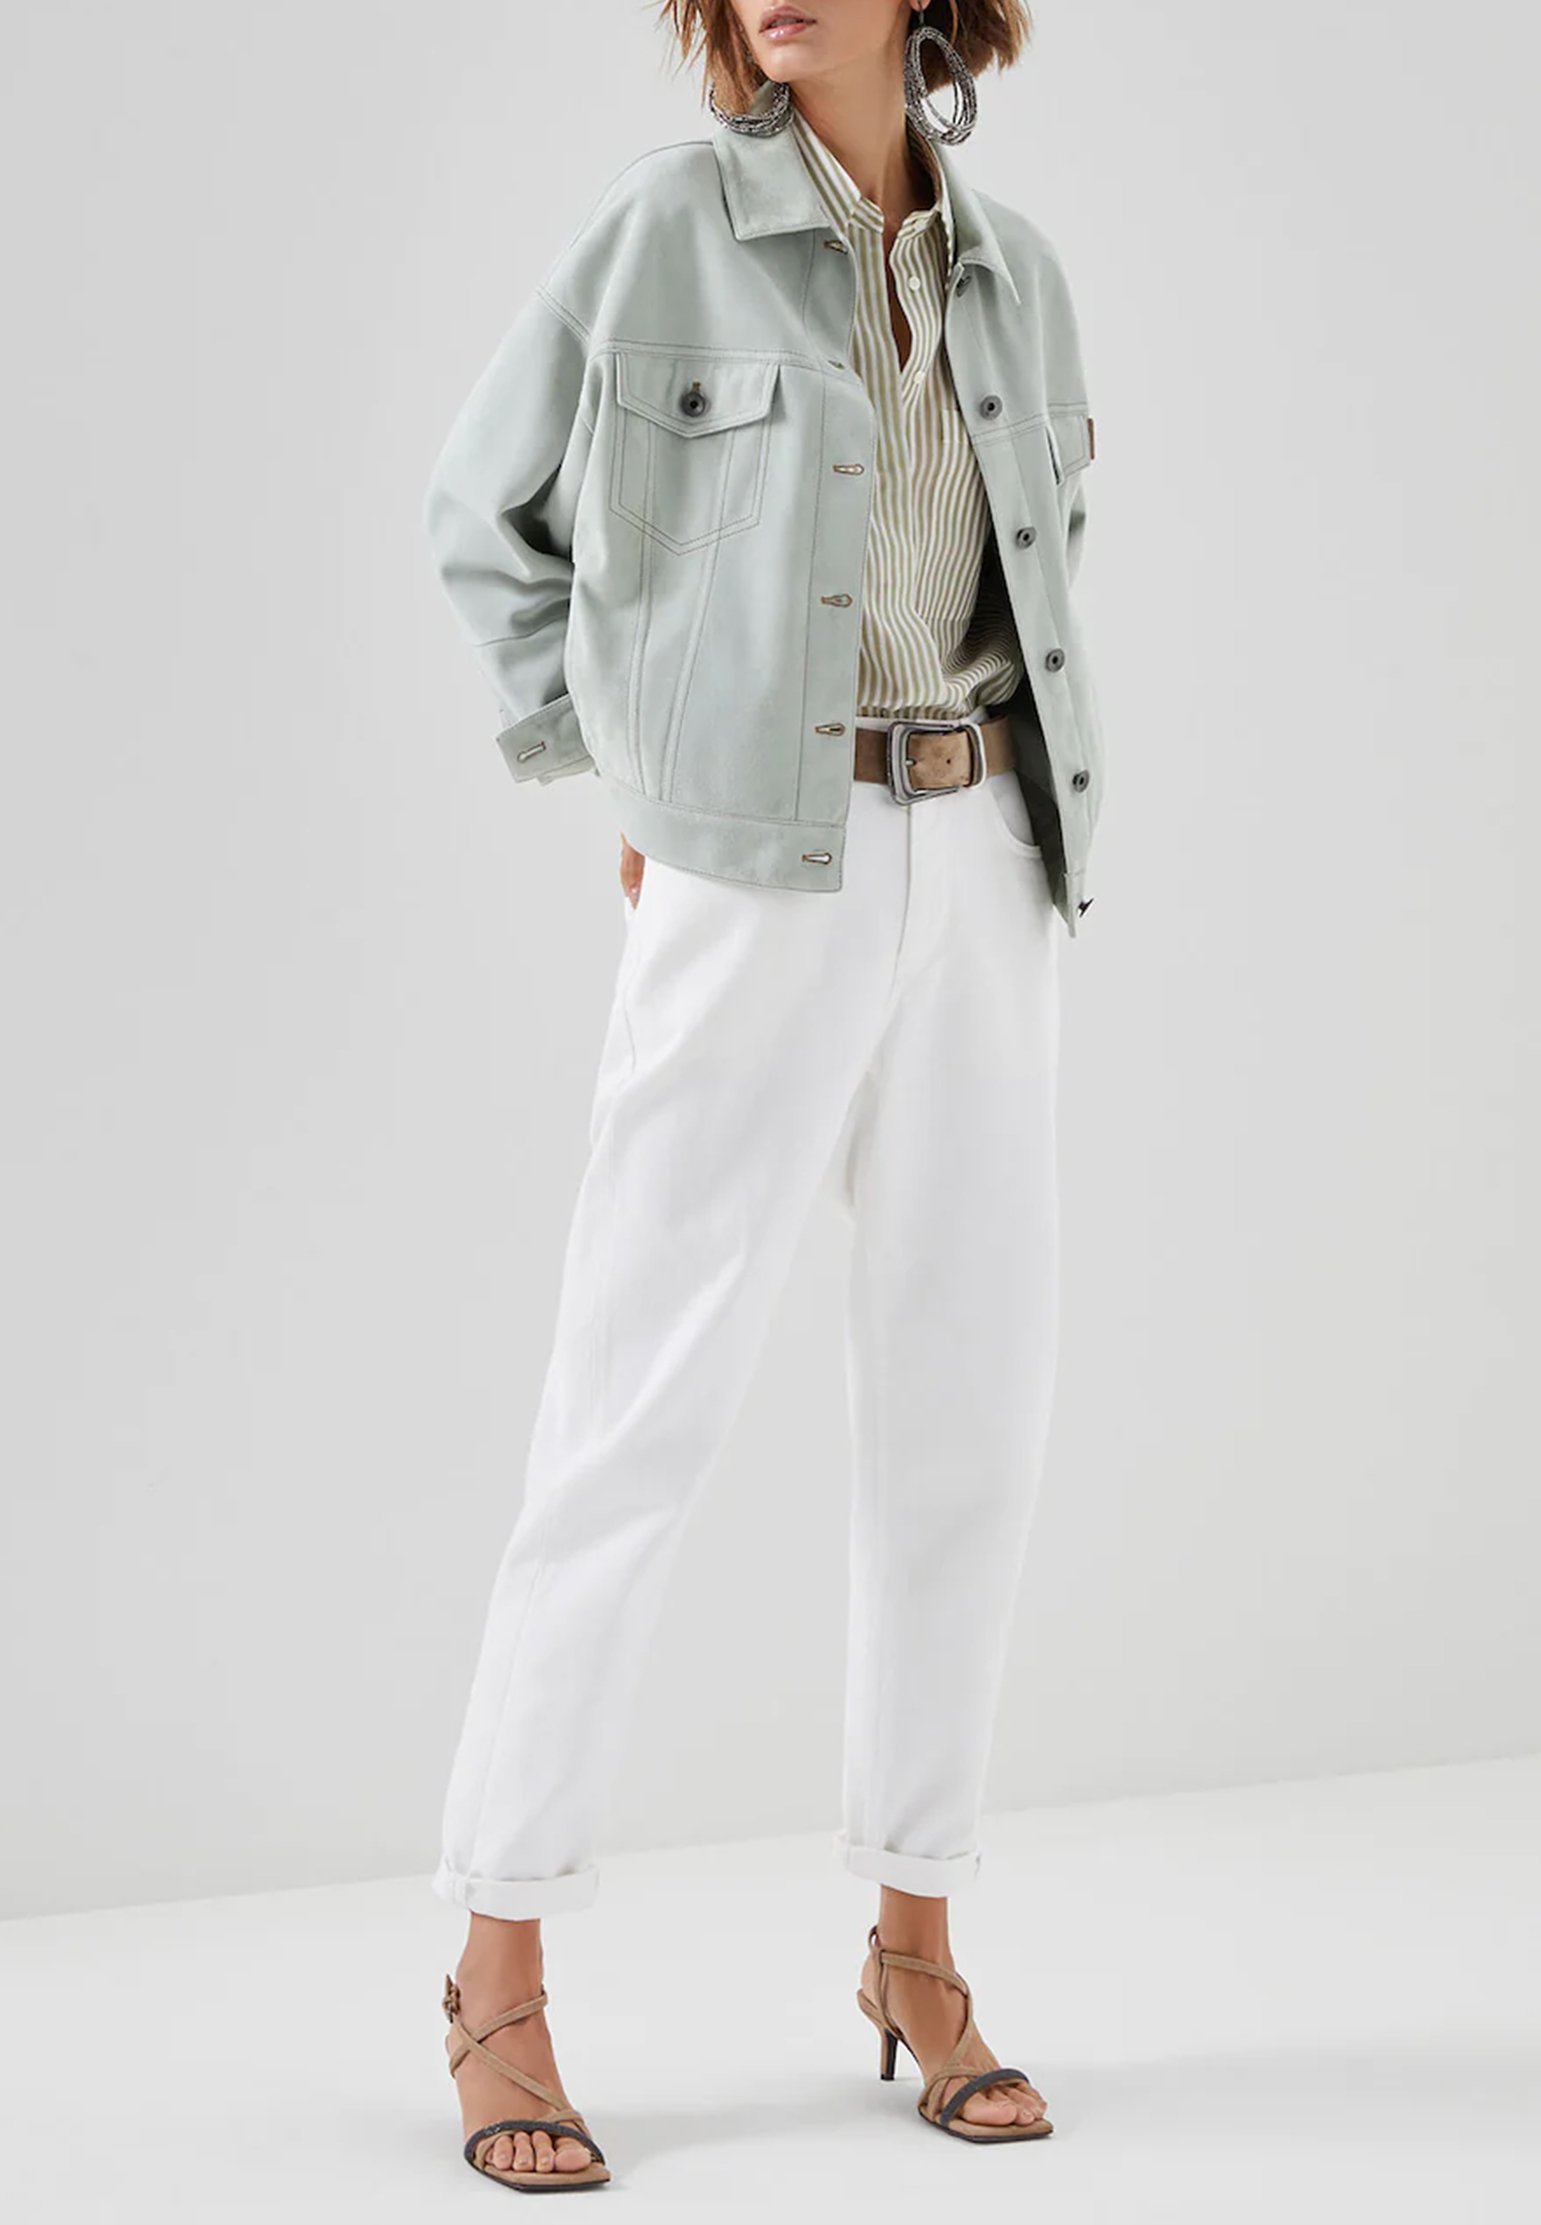 Jeans BRUNELLO CUCINELLI Color: white (Code: 616) in online store Allure